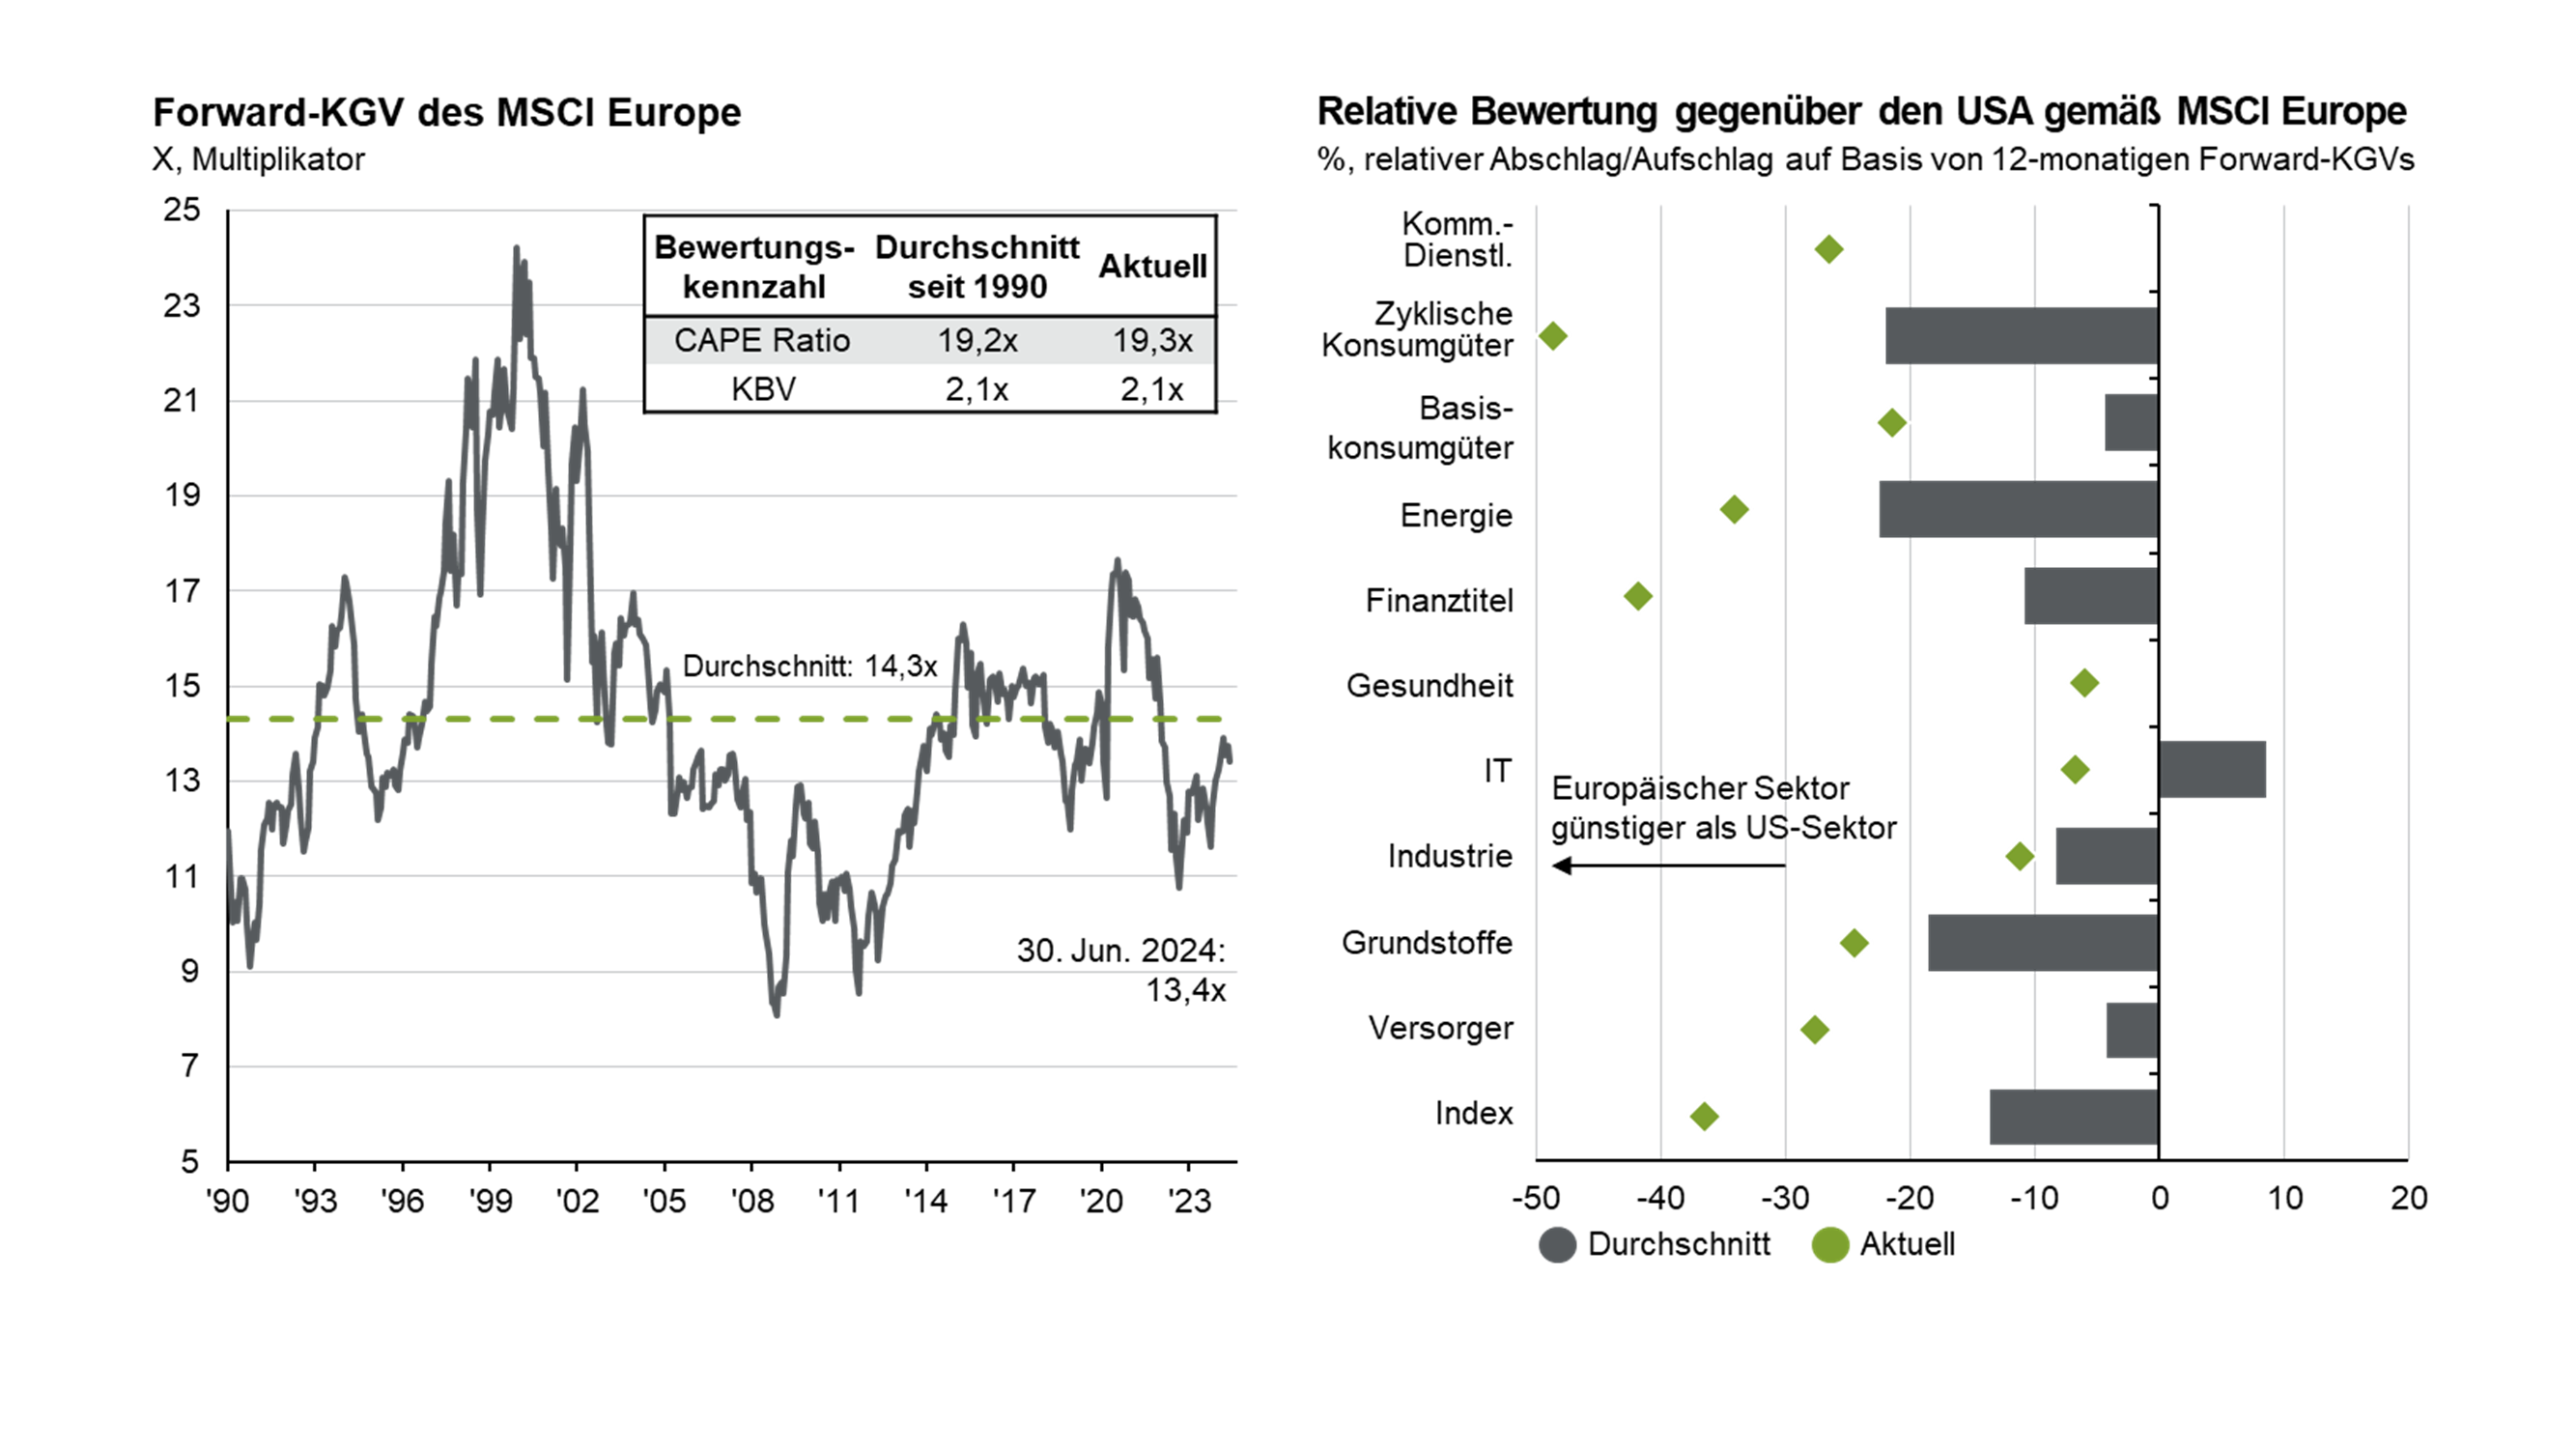 Aktienbewertungen in Europa 